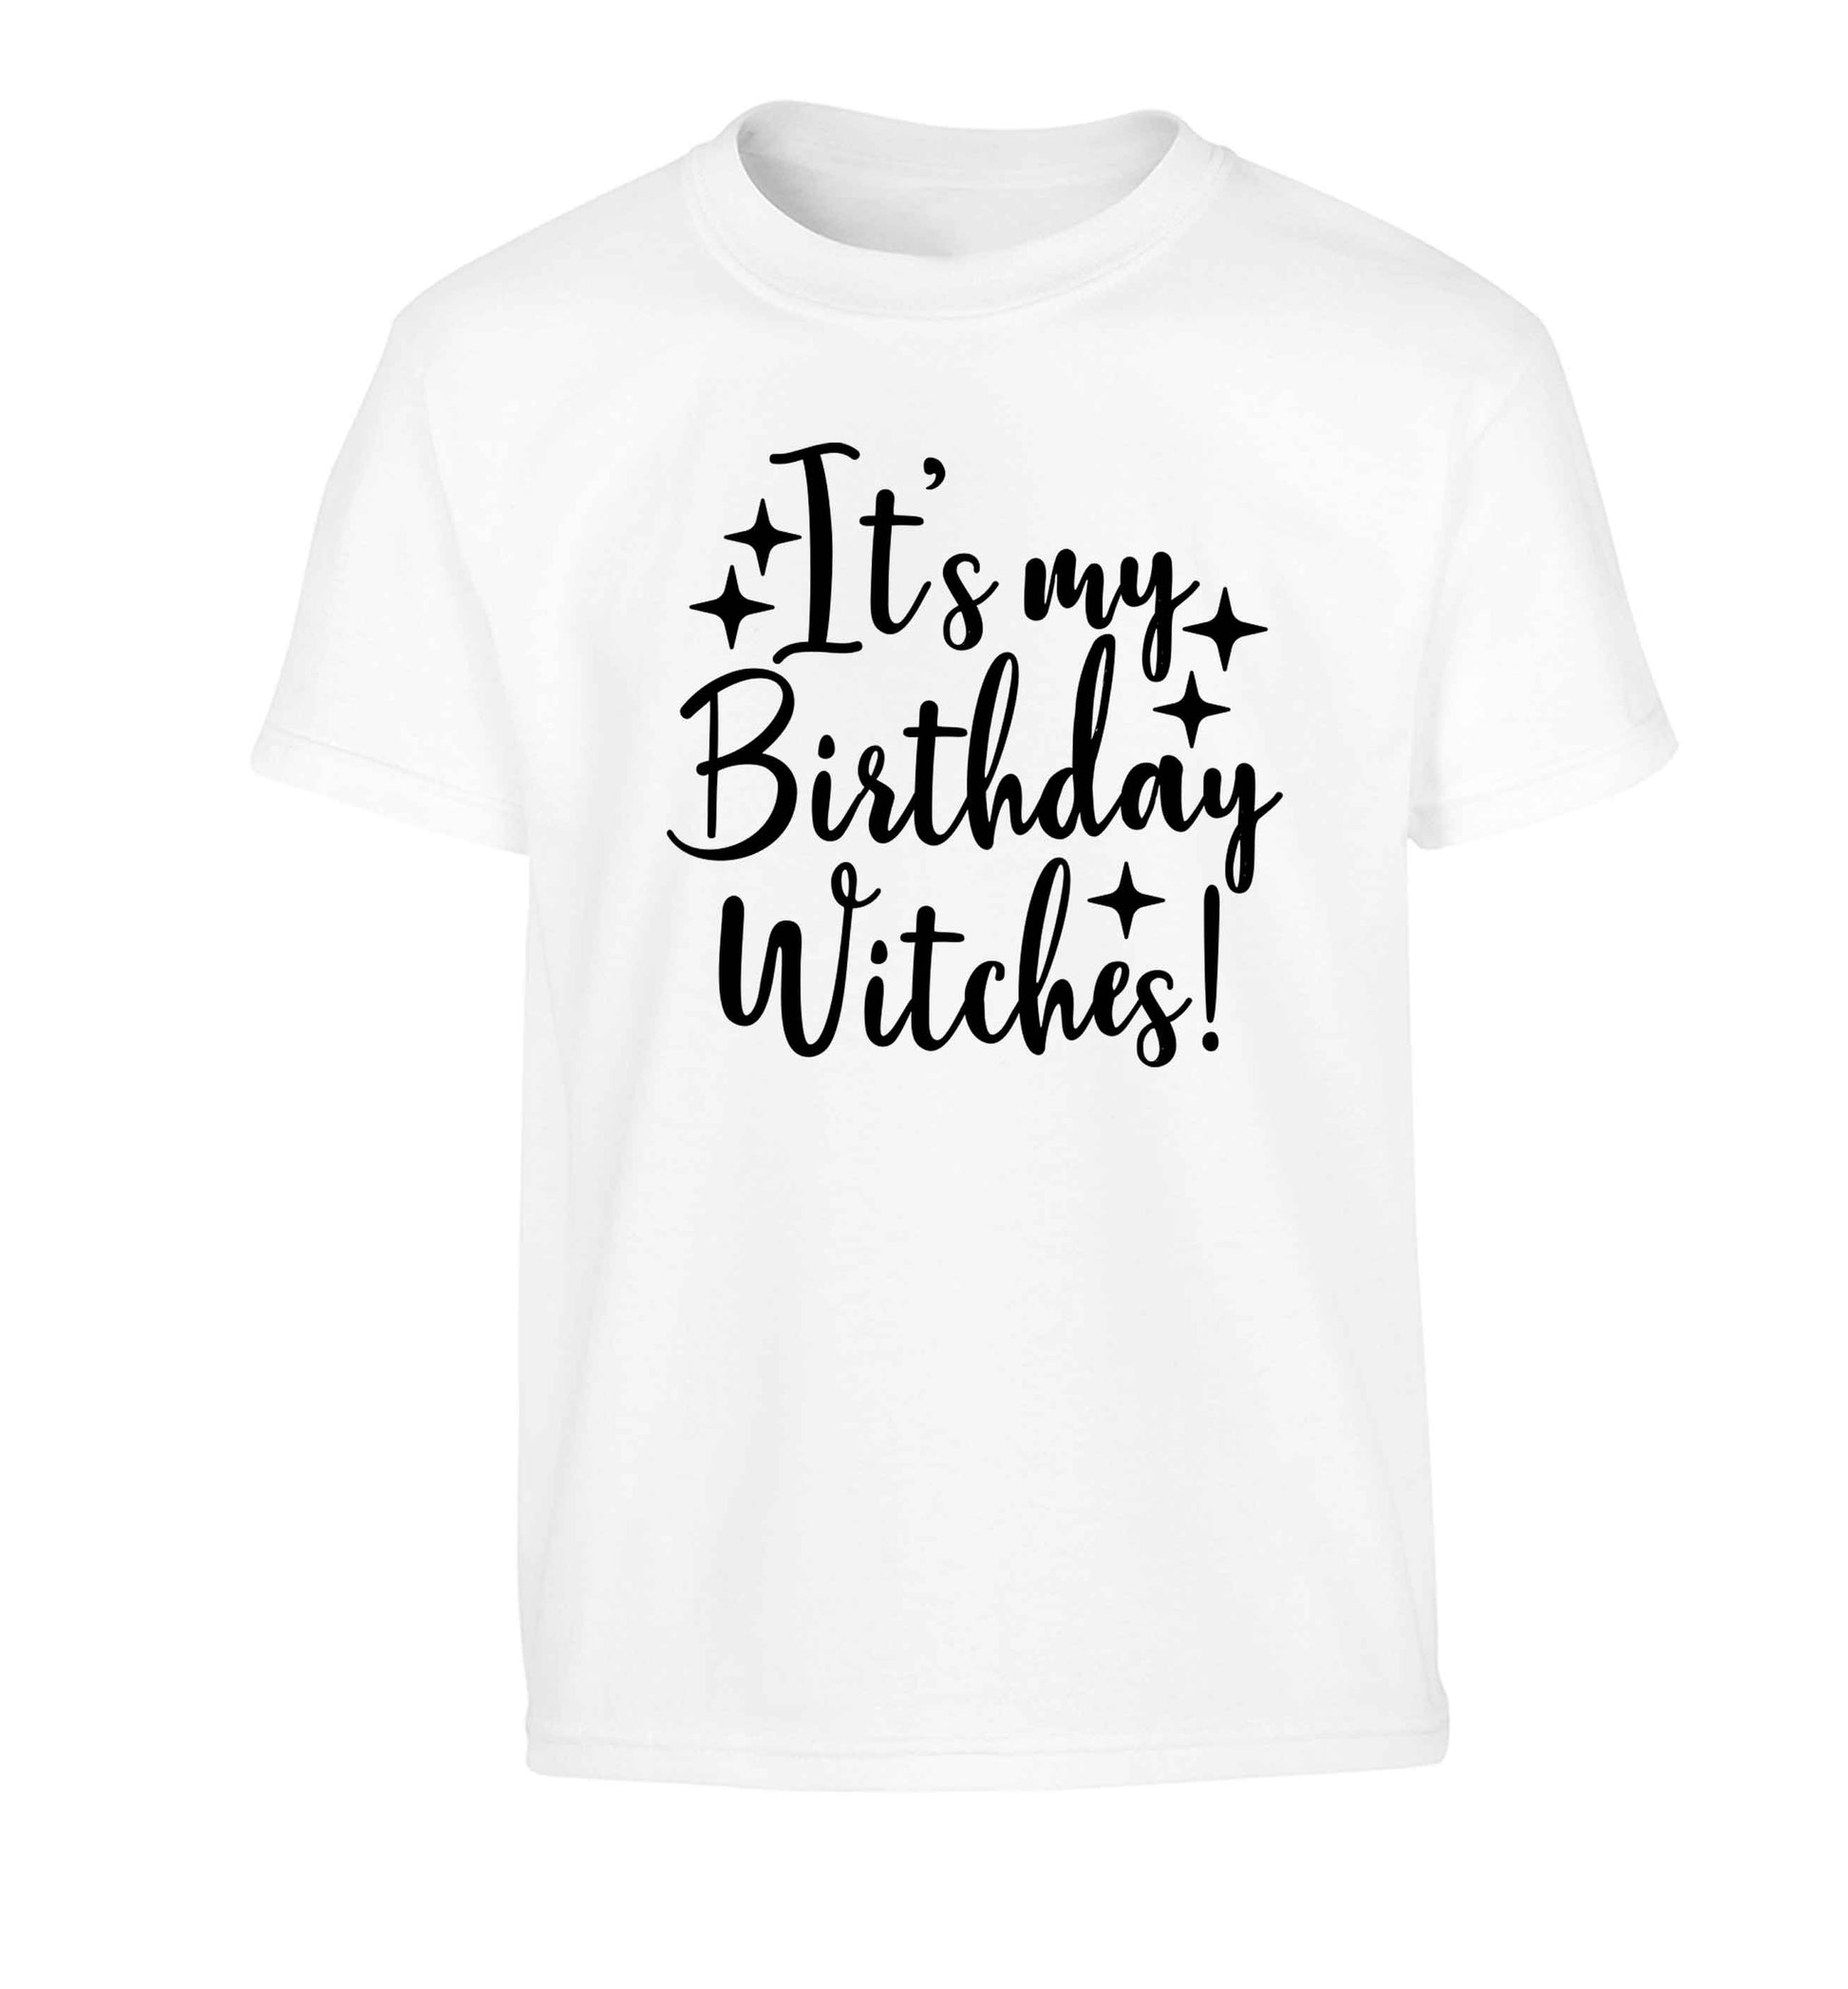 It's my birthday witches!Children's white Tshirt 12-13 Years